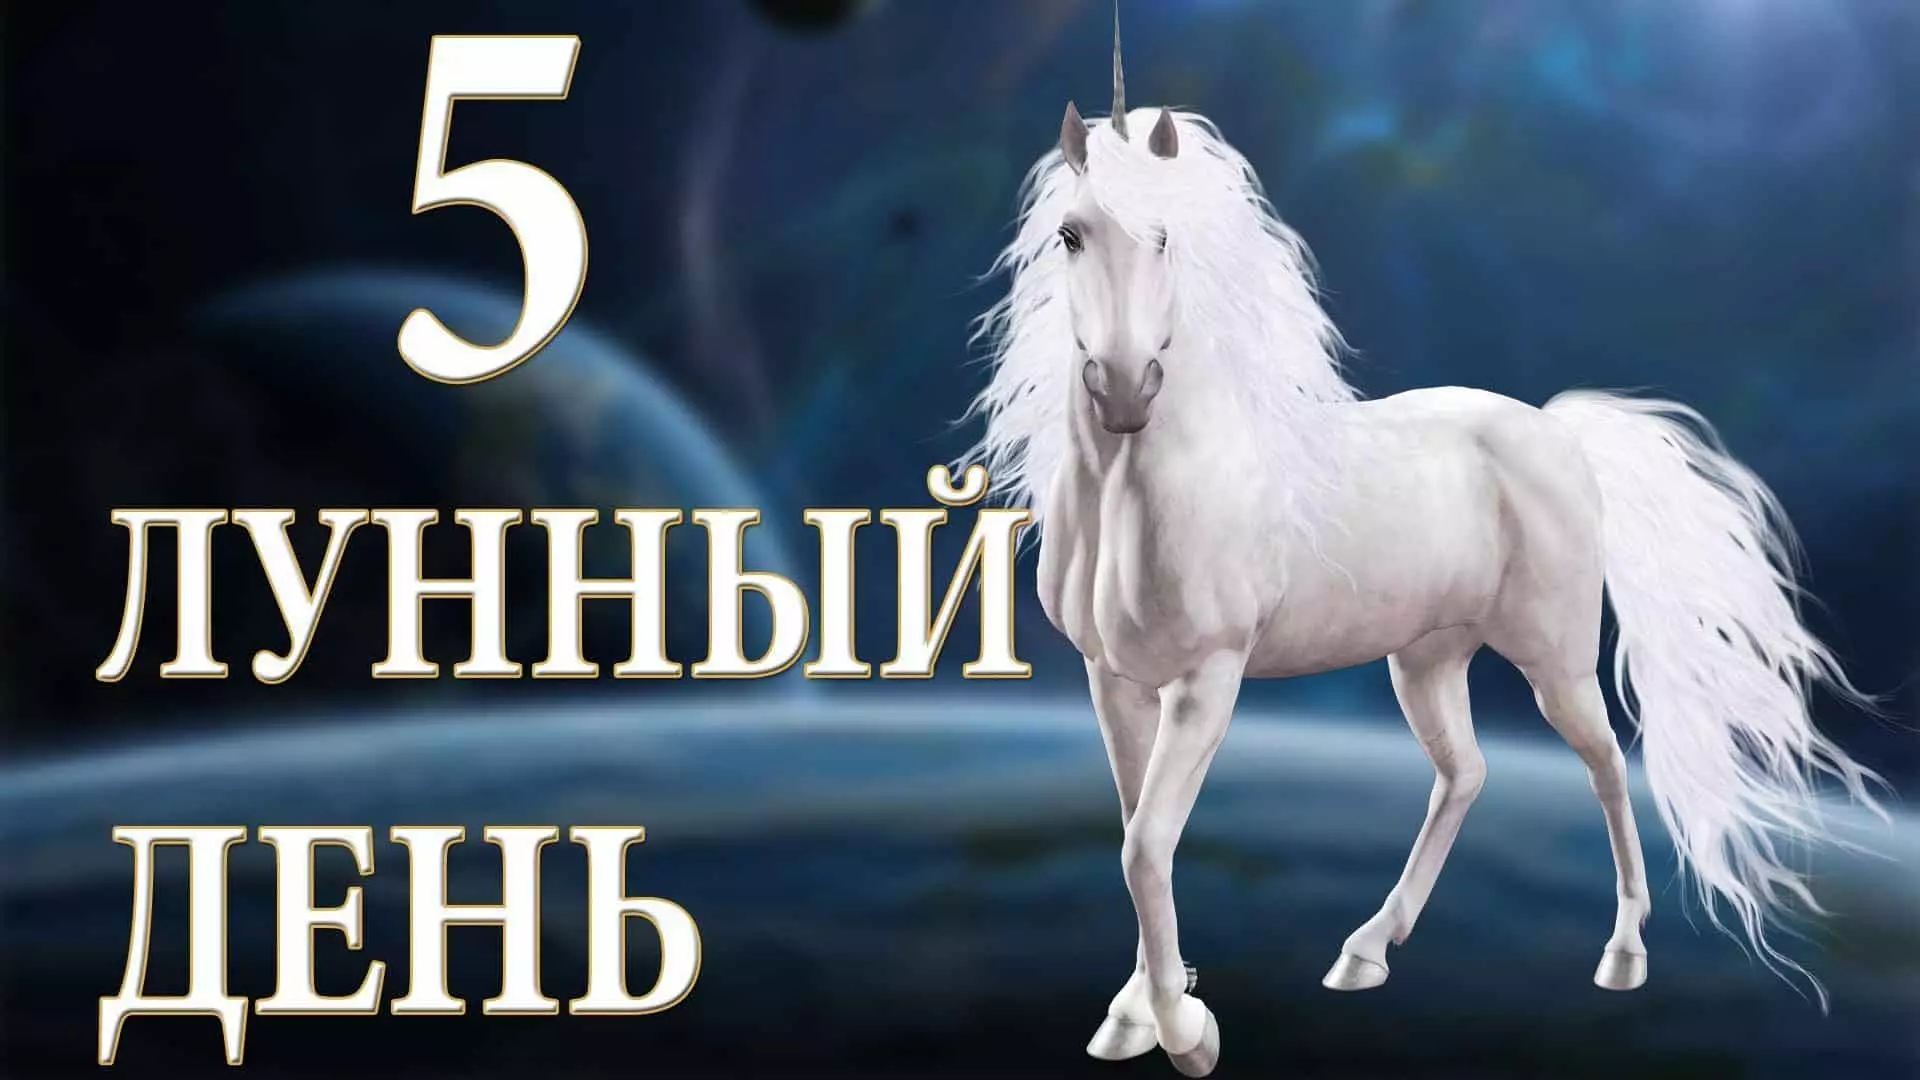 5 Diwrnod Lunar: Ei Symbol Unicorn